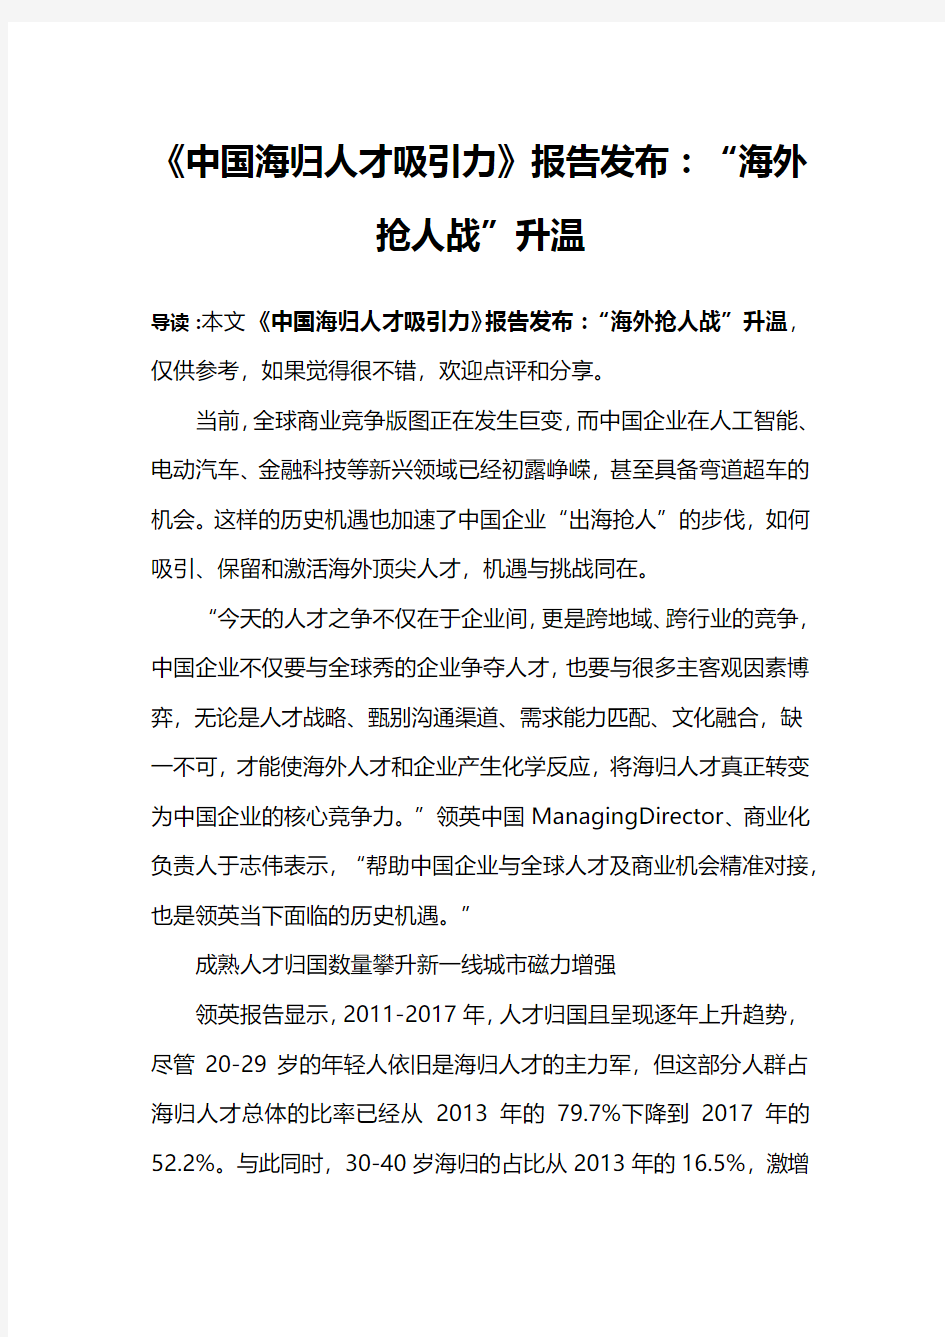 《中国海归人才吸引力》报告发布：“海外抢人战”升温